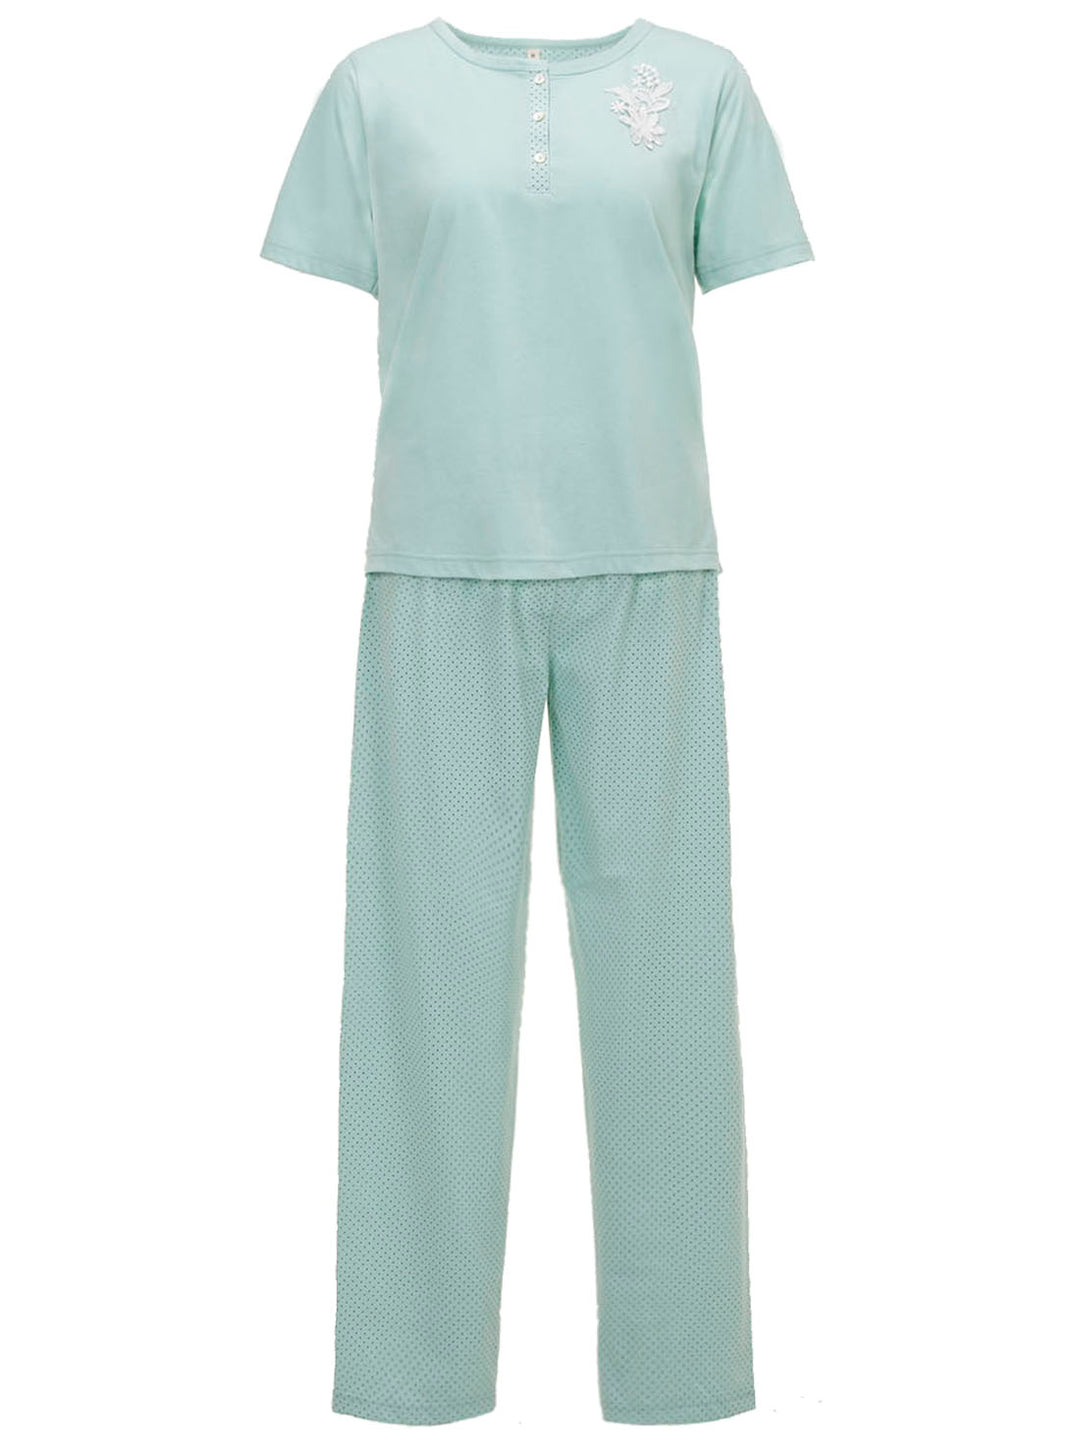 Pajama Set Short Sleeve - Uni Dots